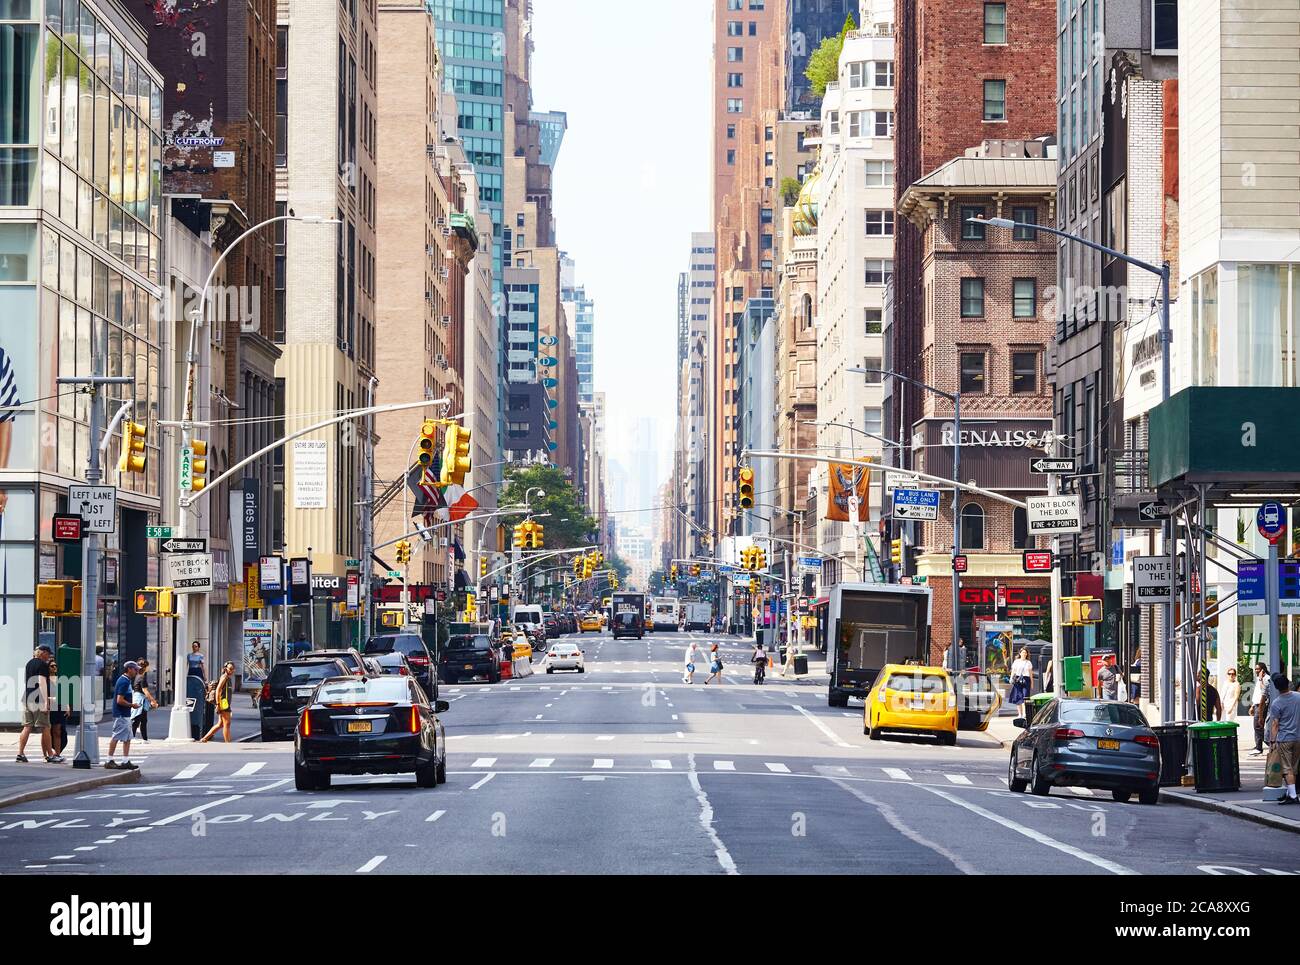 New York, États-Unis - 01 juillet 2018 : vue générale de l'animation de Lexington Avenue, située à l'est du quartier de Manhattan. Banque D'Images